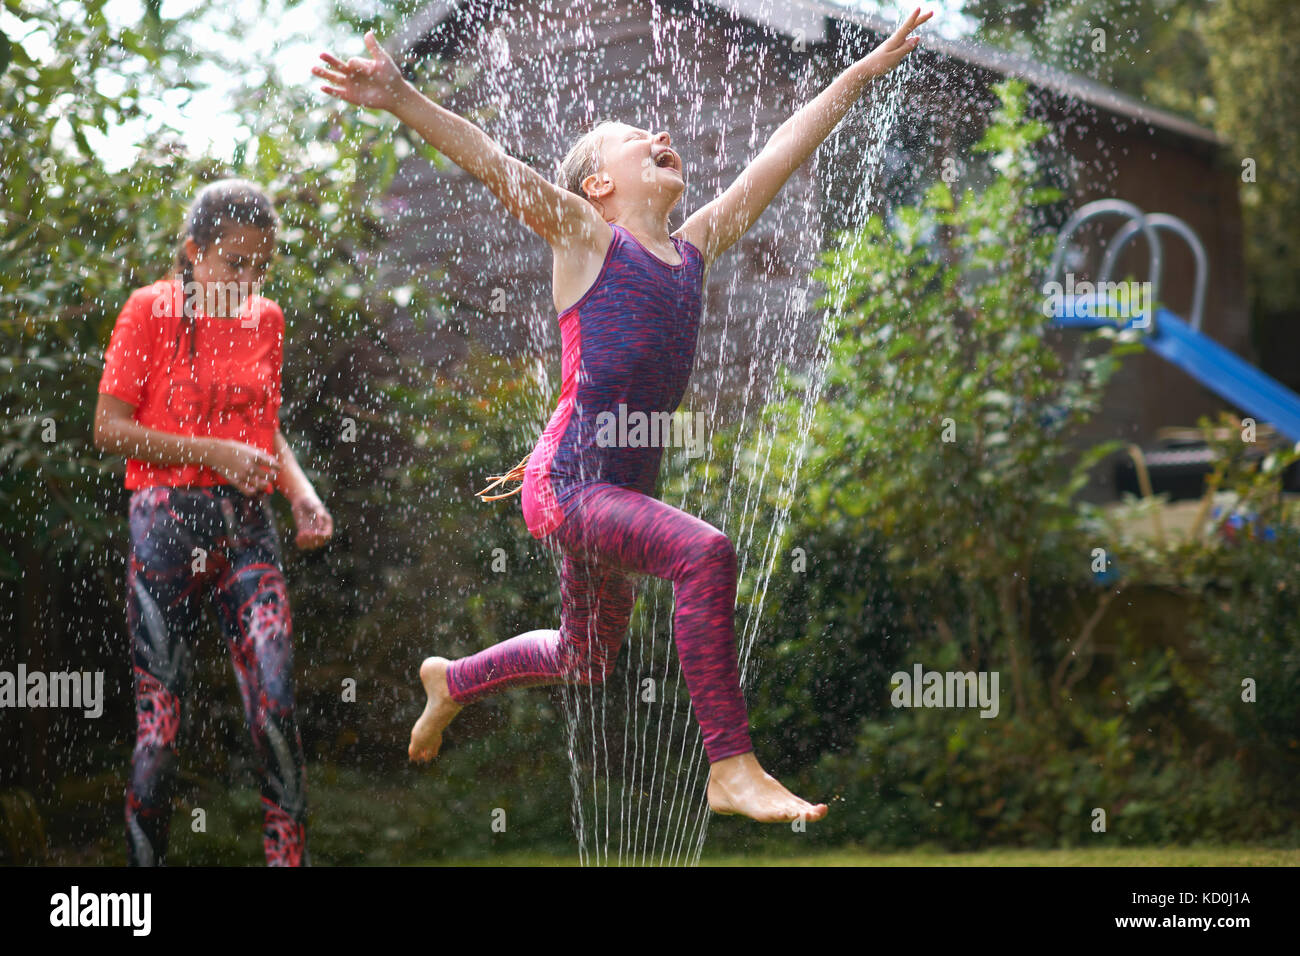 Les filles sautant sprinkleur jardin Banque D'Images